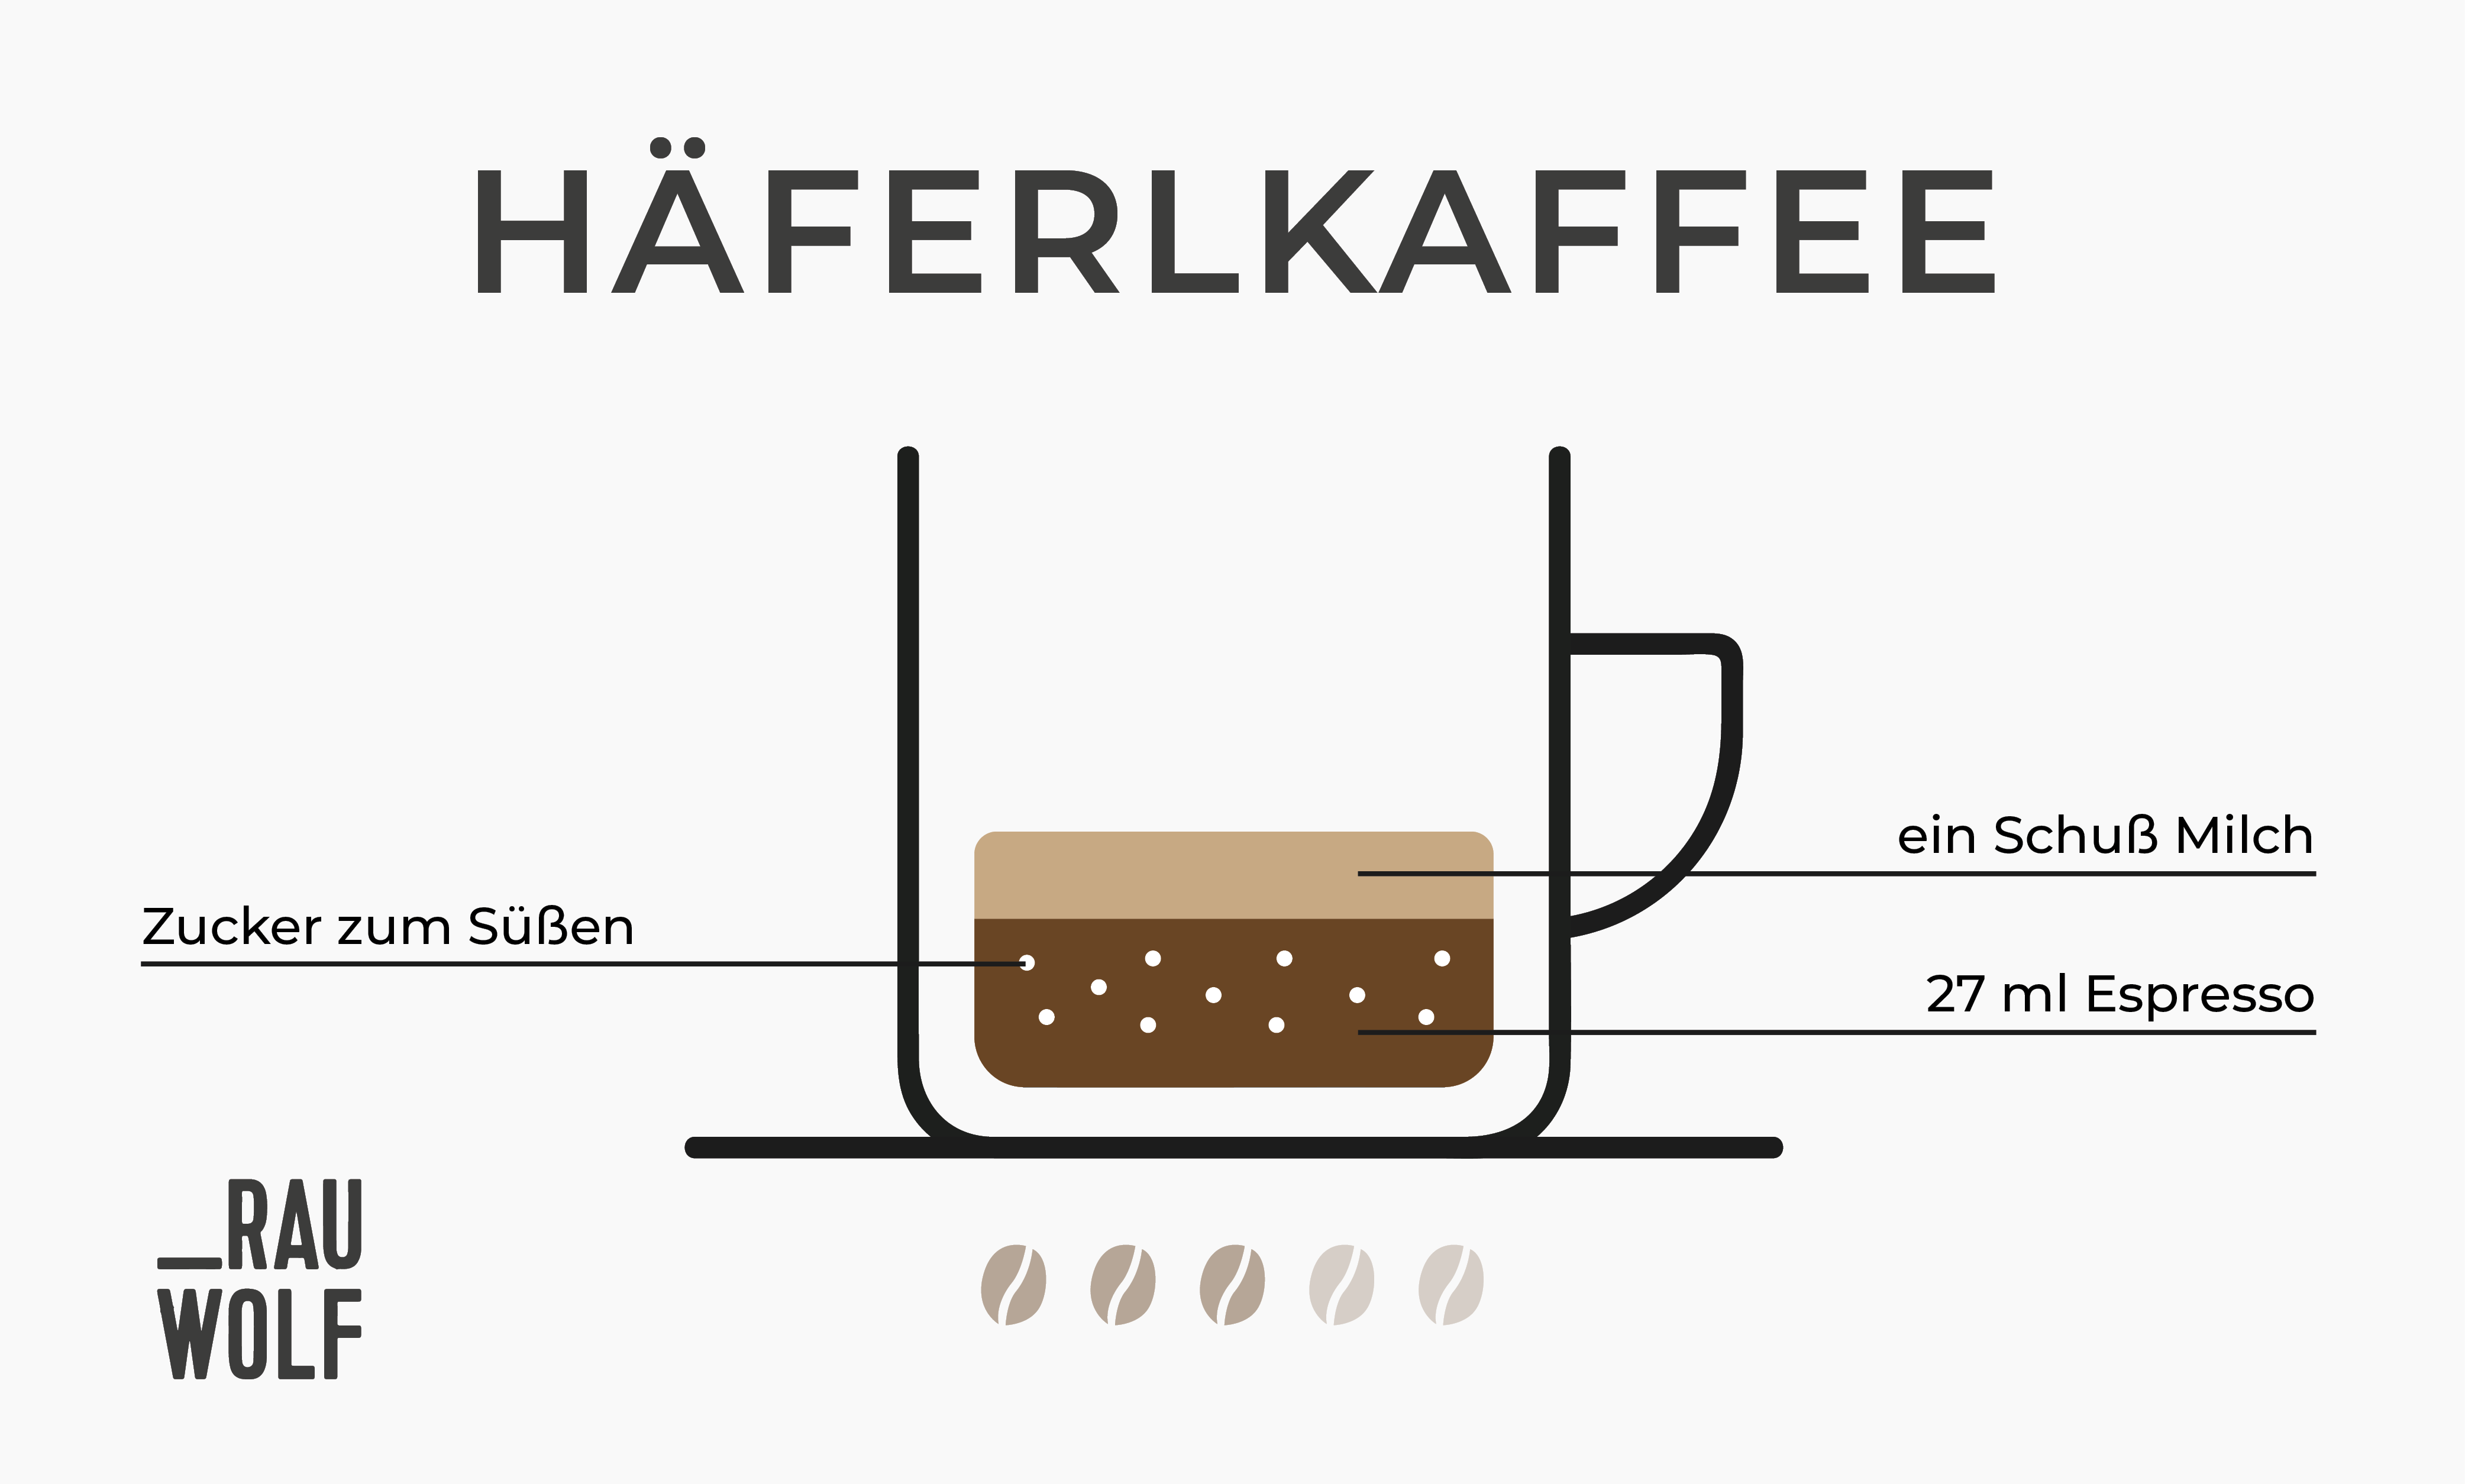 Häferlkaffee